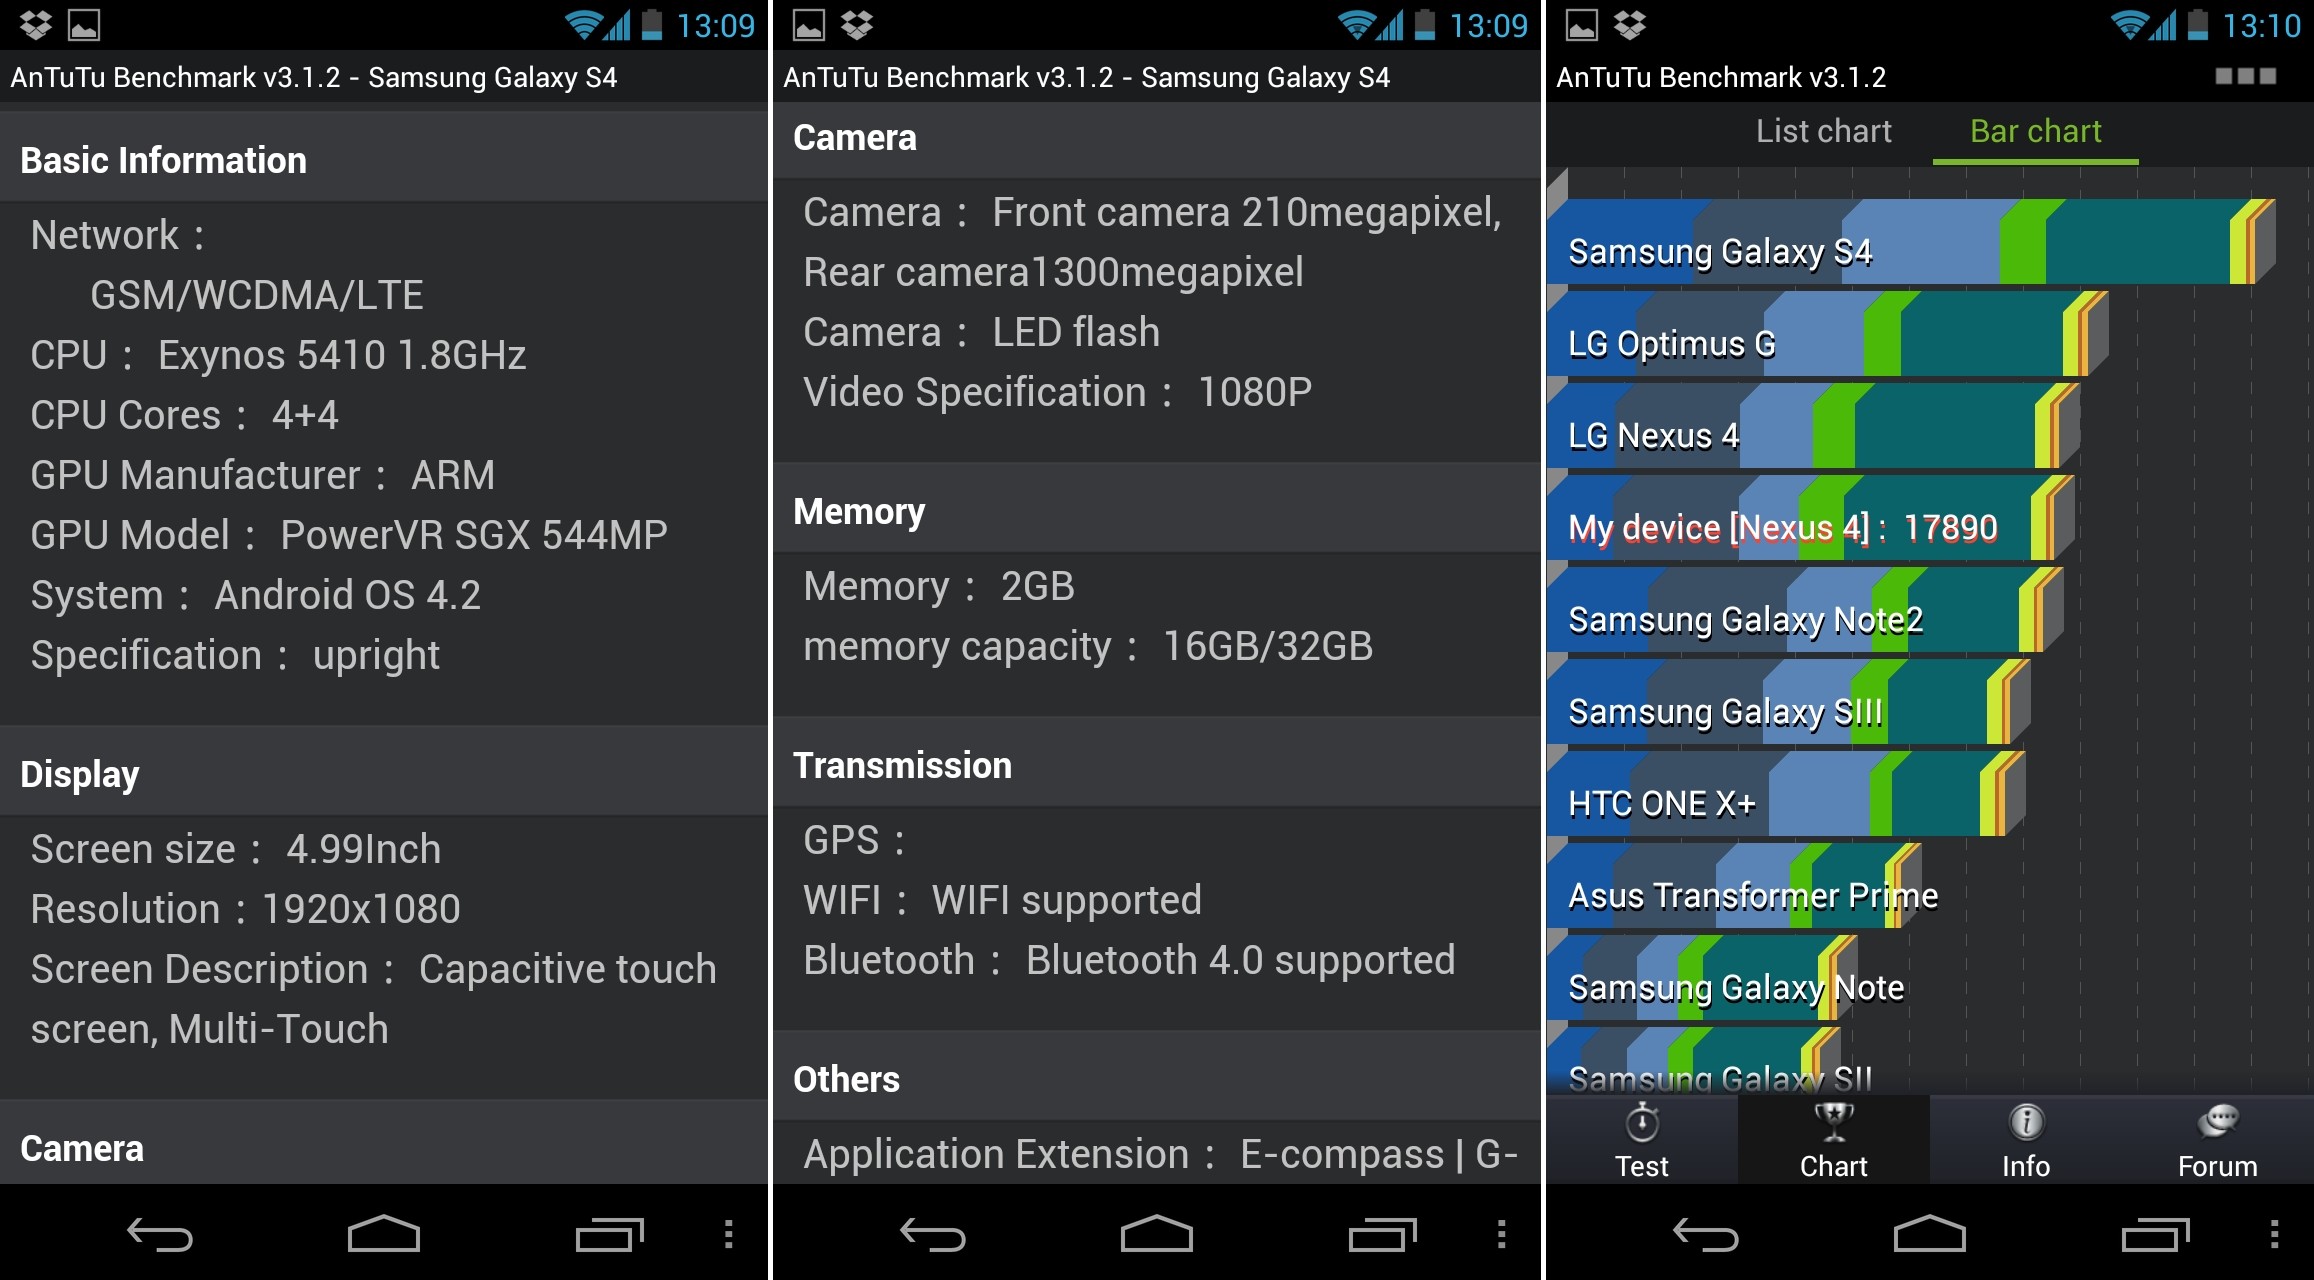 Especificaciones del Samsung Galaxy S4 confirmadas a través de AnTuTu Benchmark